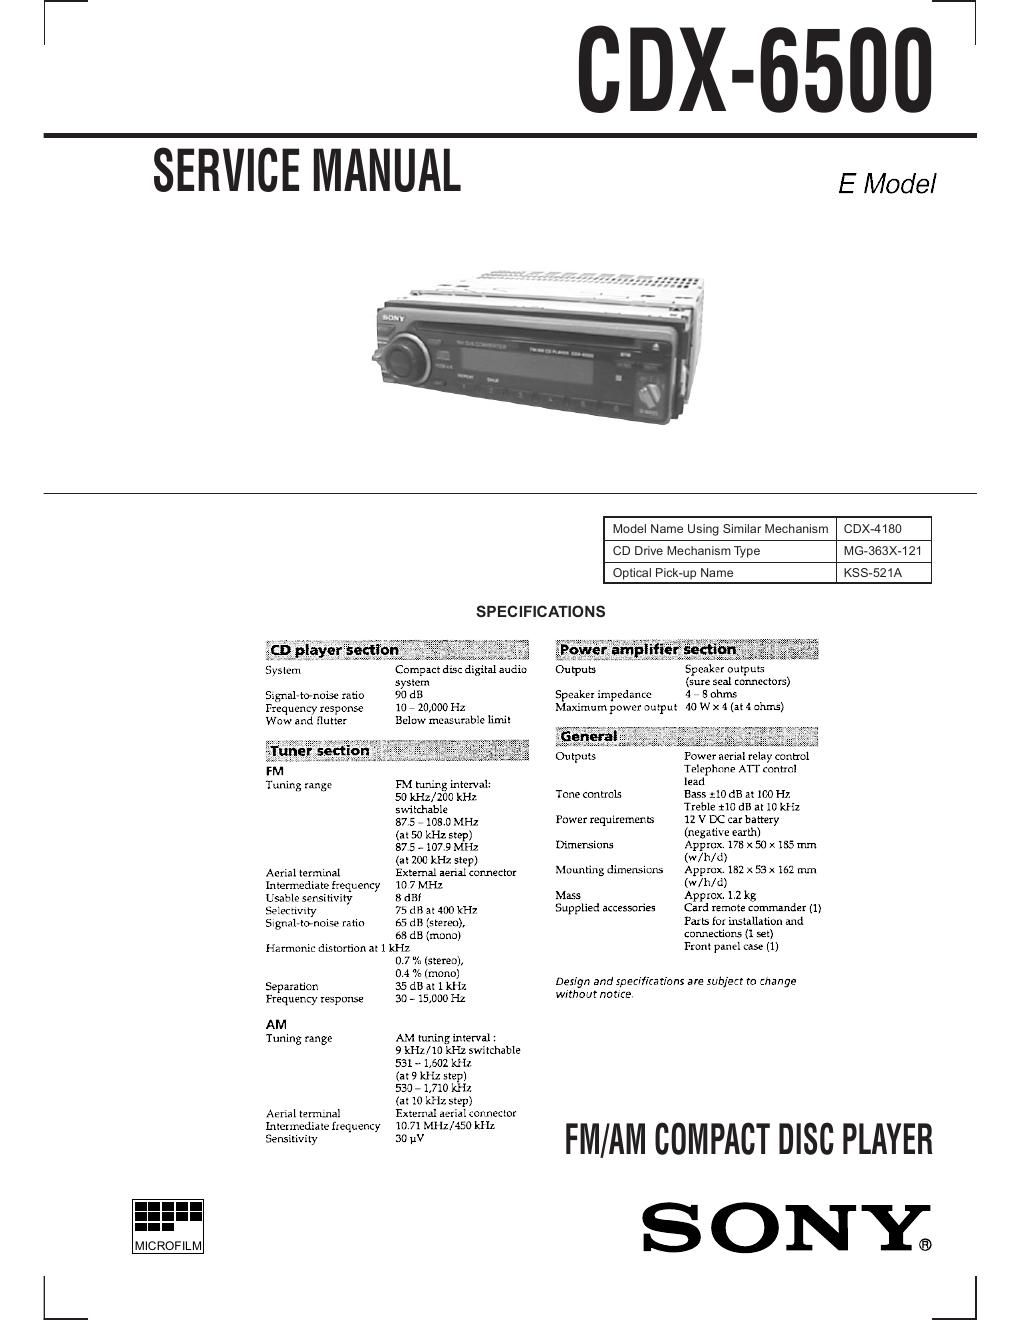 sony cdx 6500 service manual 2